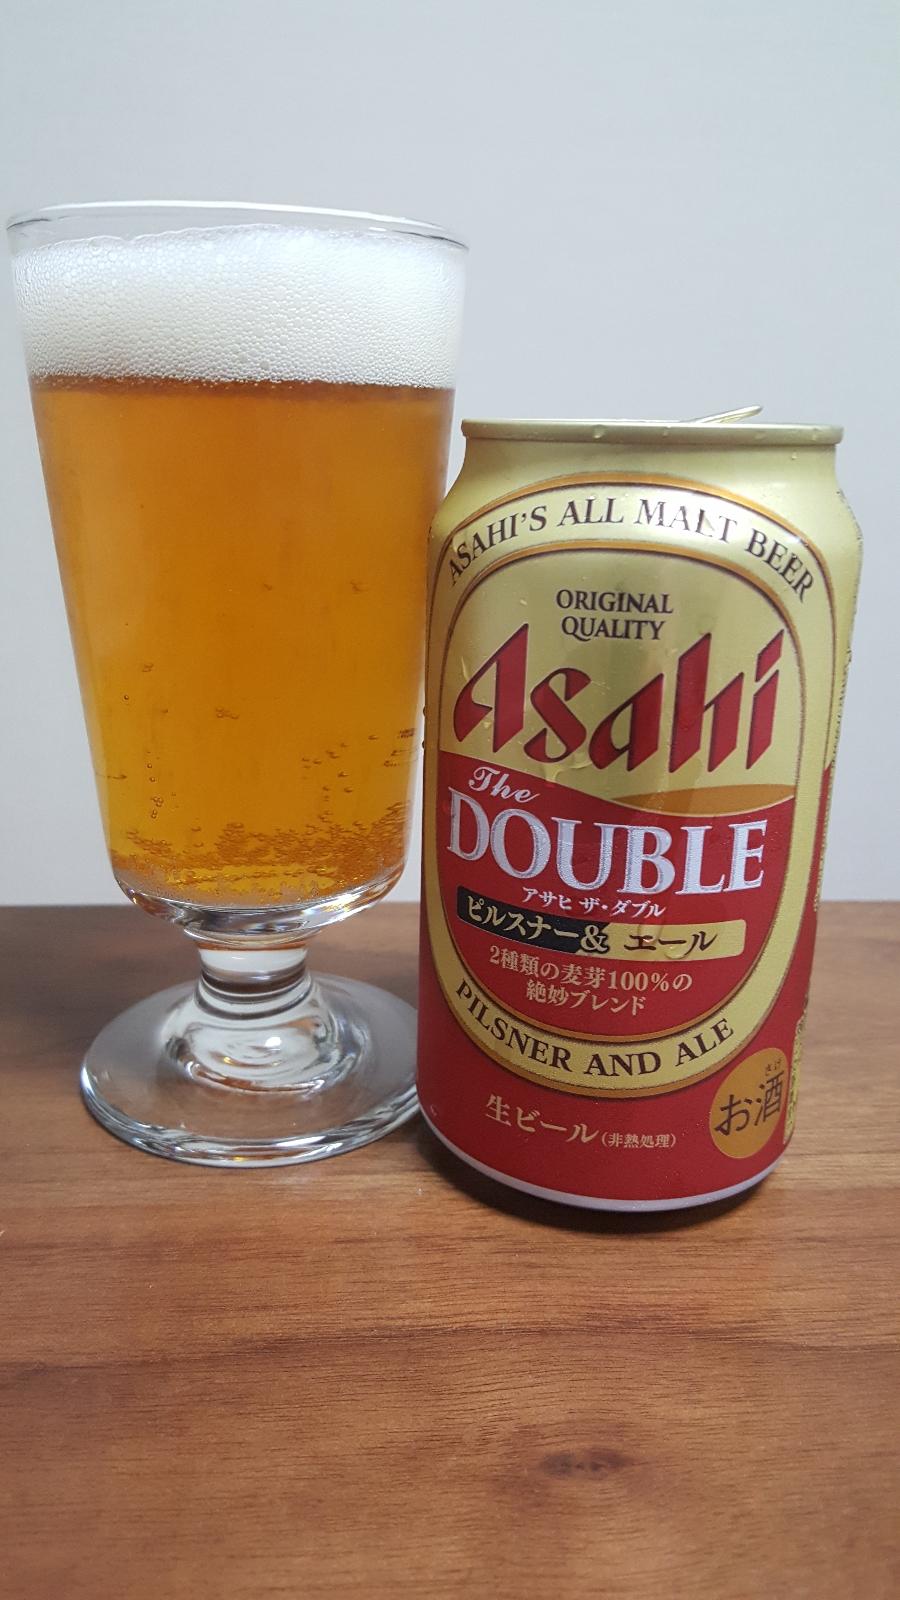 Asahi The Double (2018)